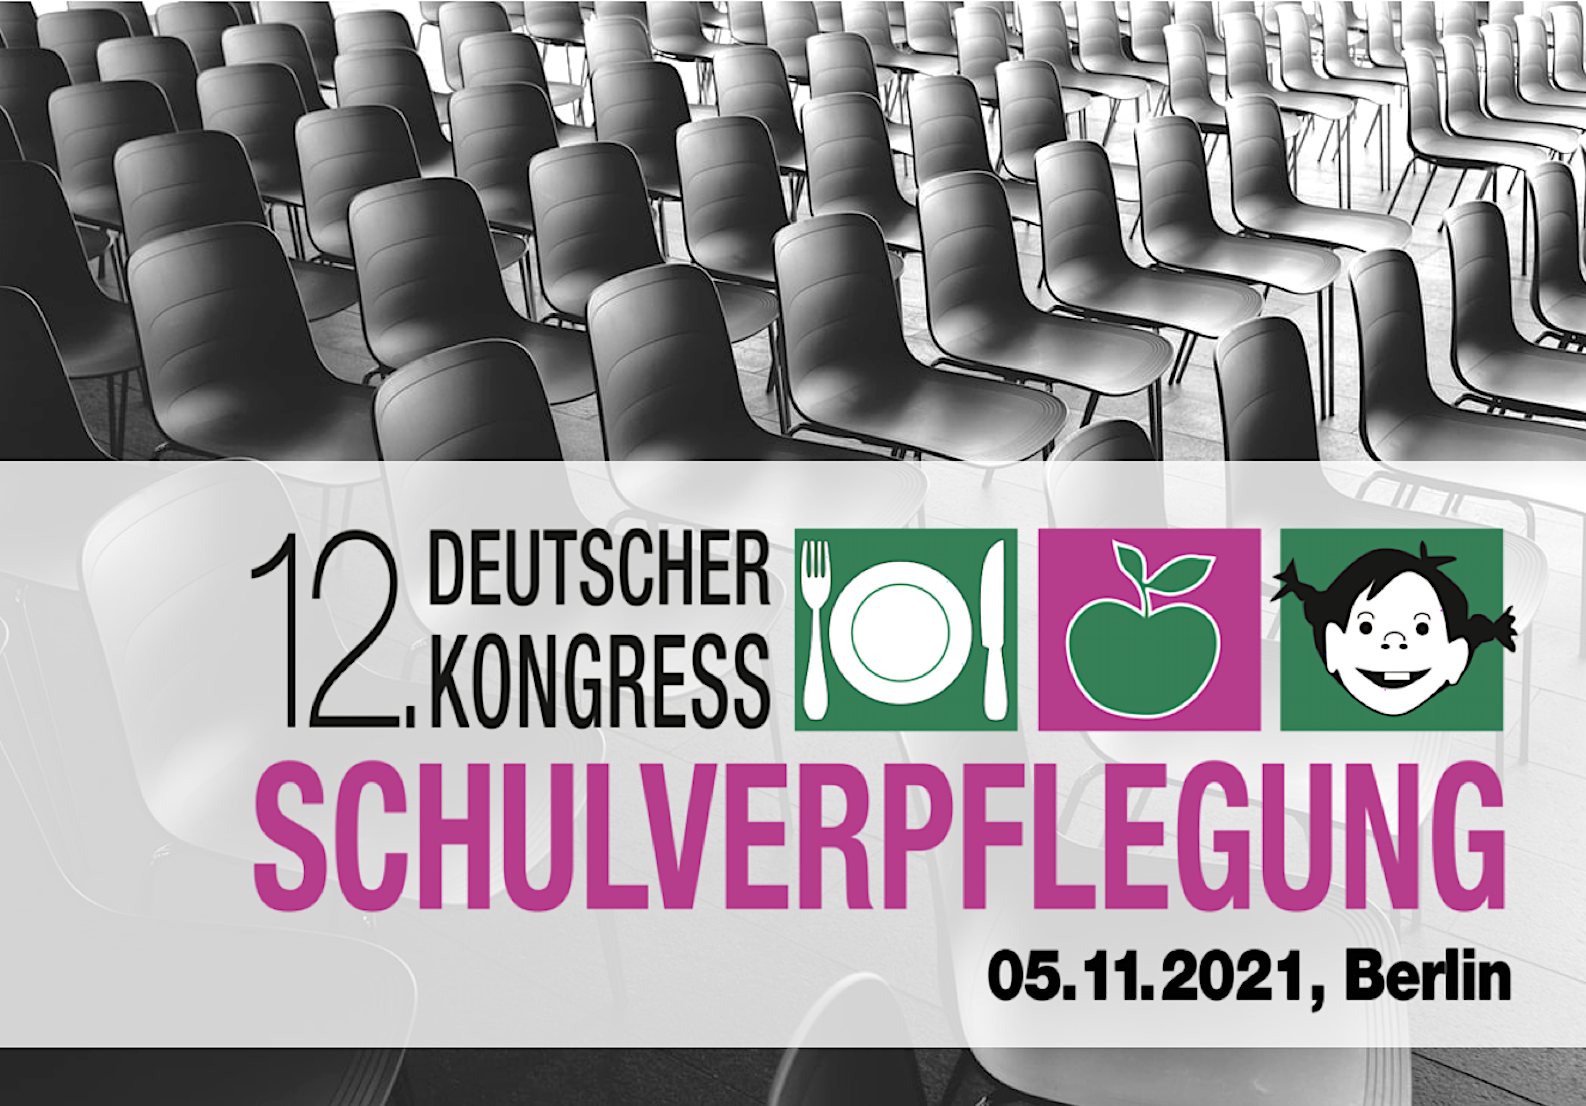 12. Deutscher Kongress Schulverpflegung